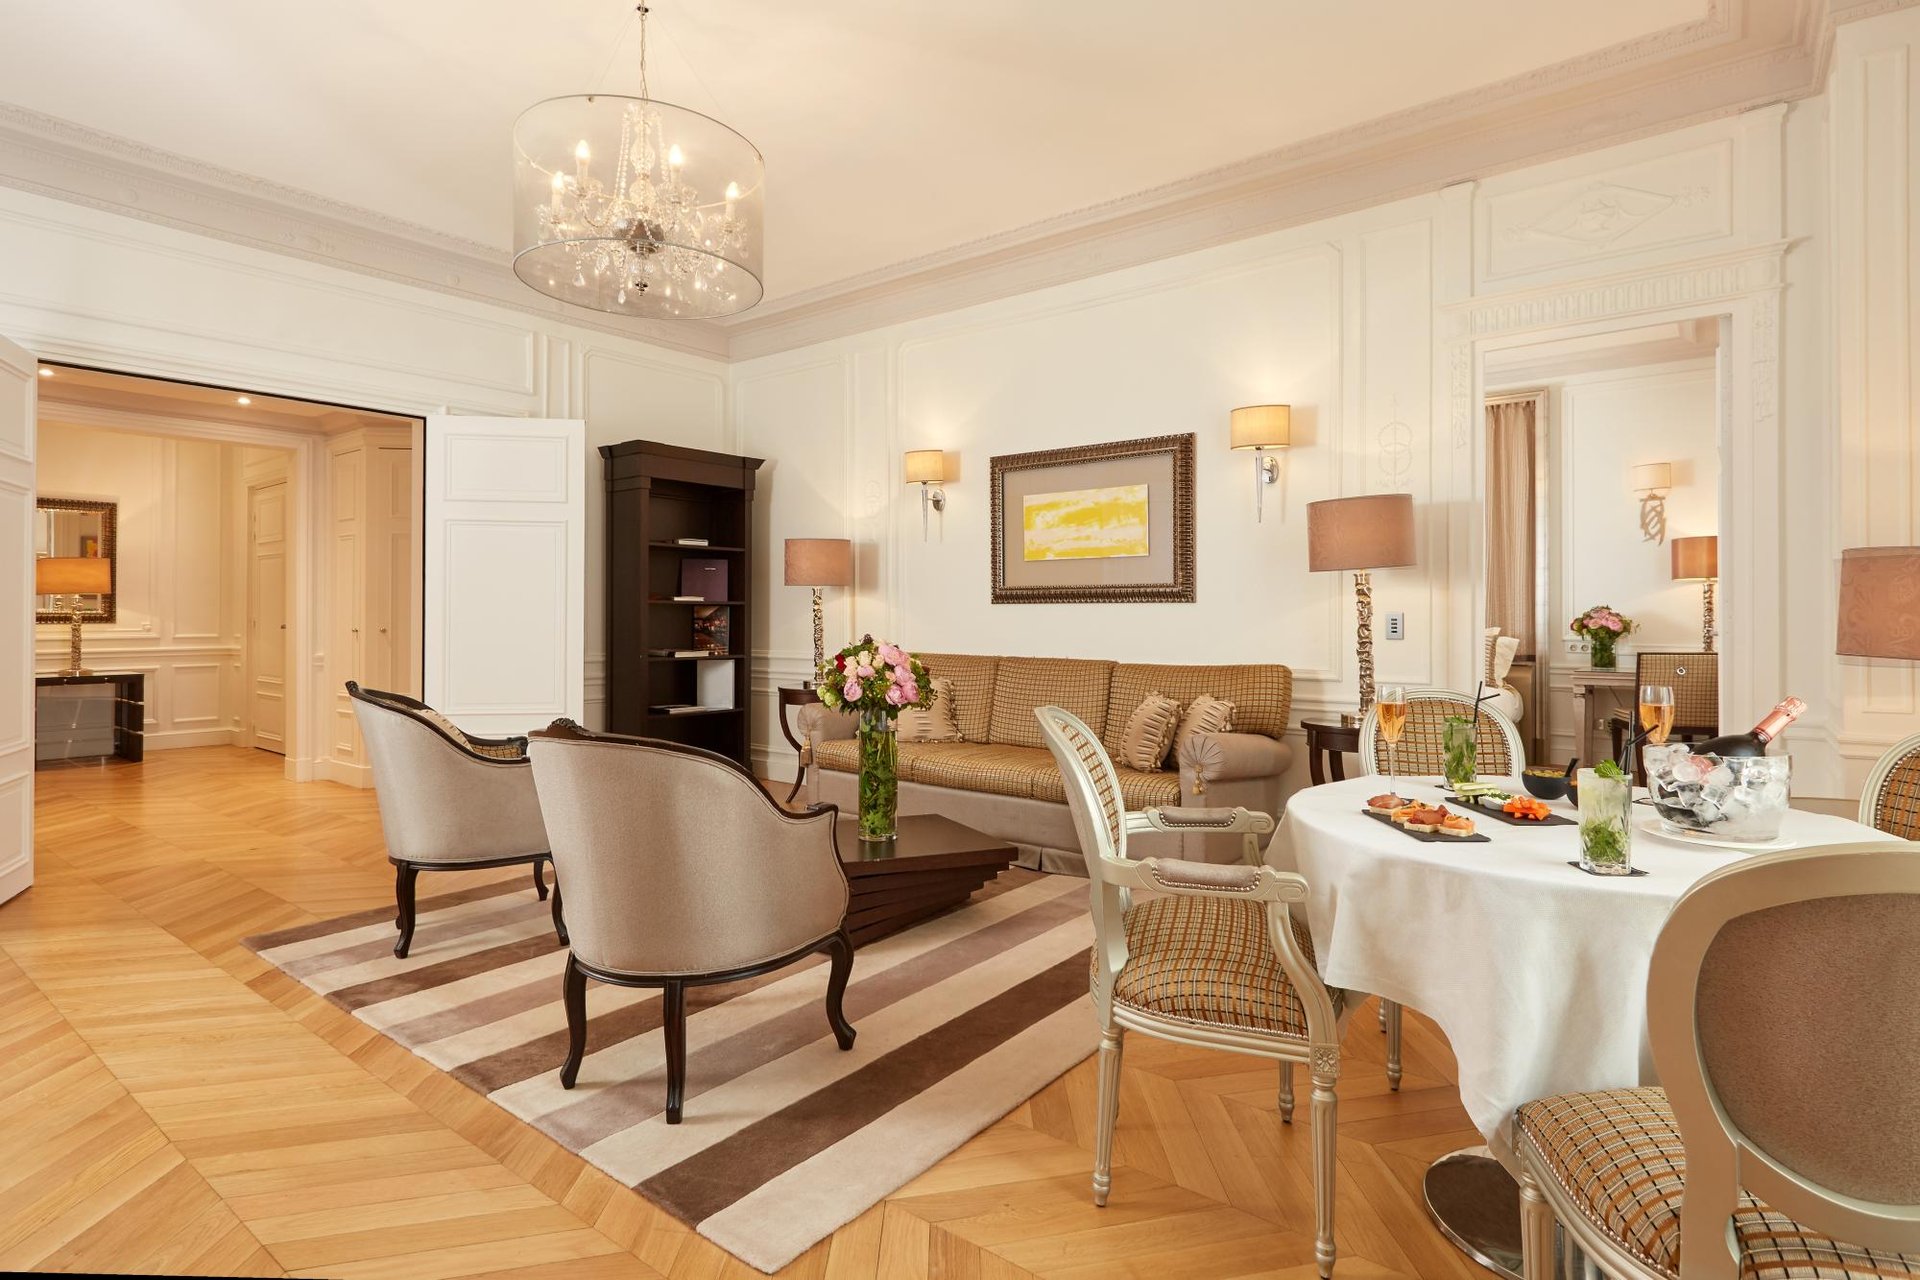 Majestic Hotel-Spa Champs-Elysées Prestige Suite